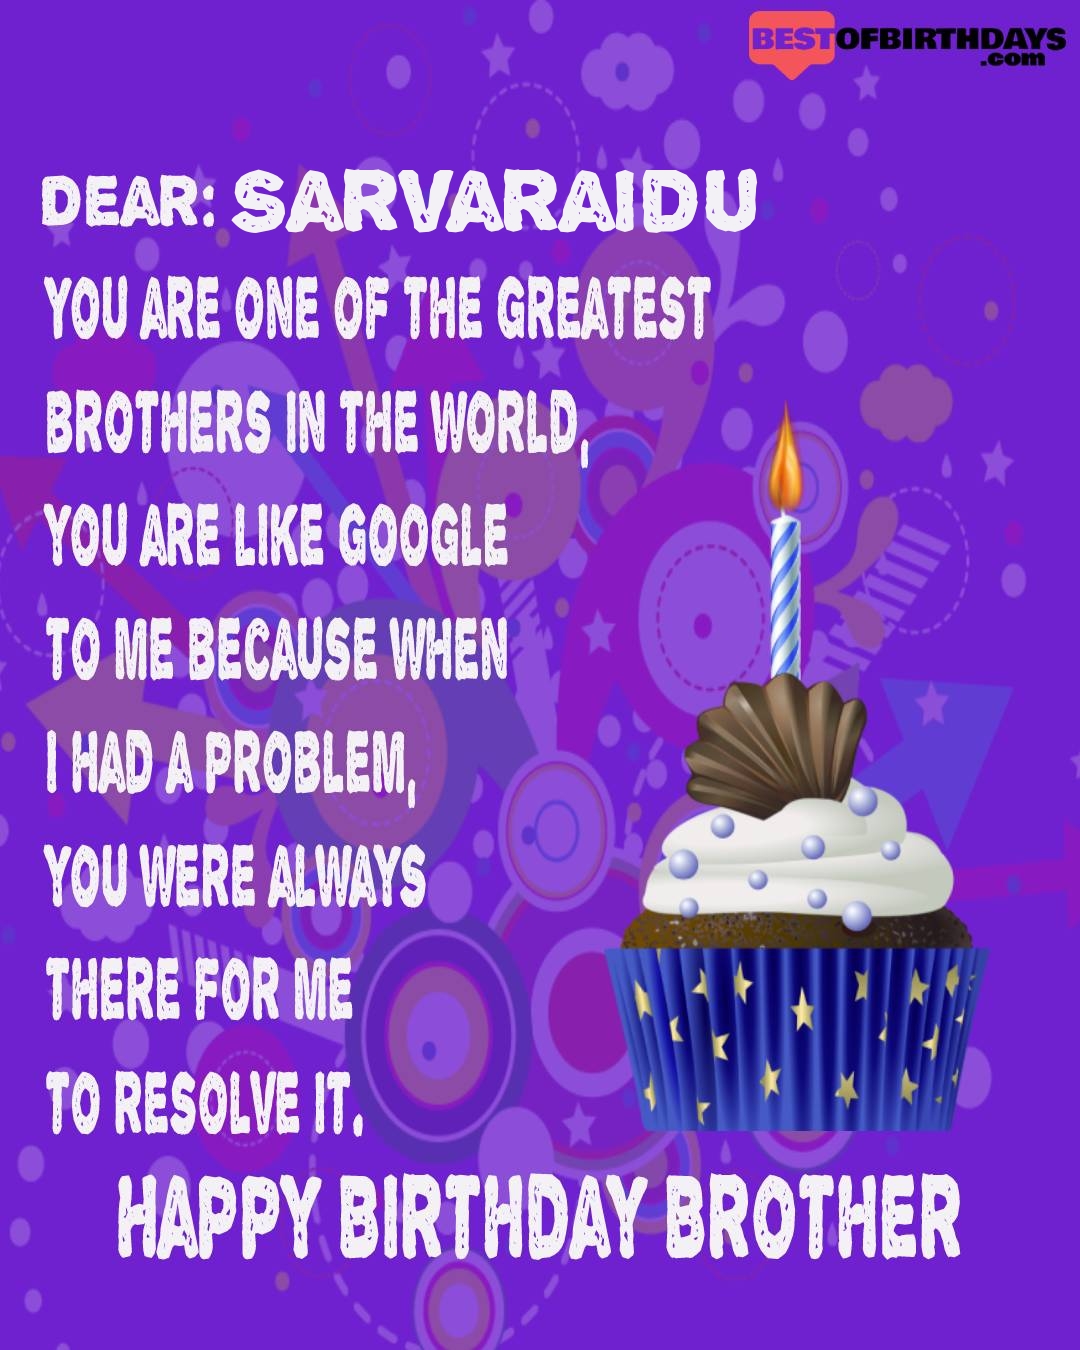 Happy birthday sarvaraidu bhai brother bro